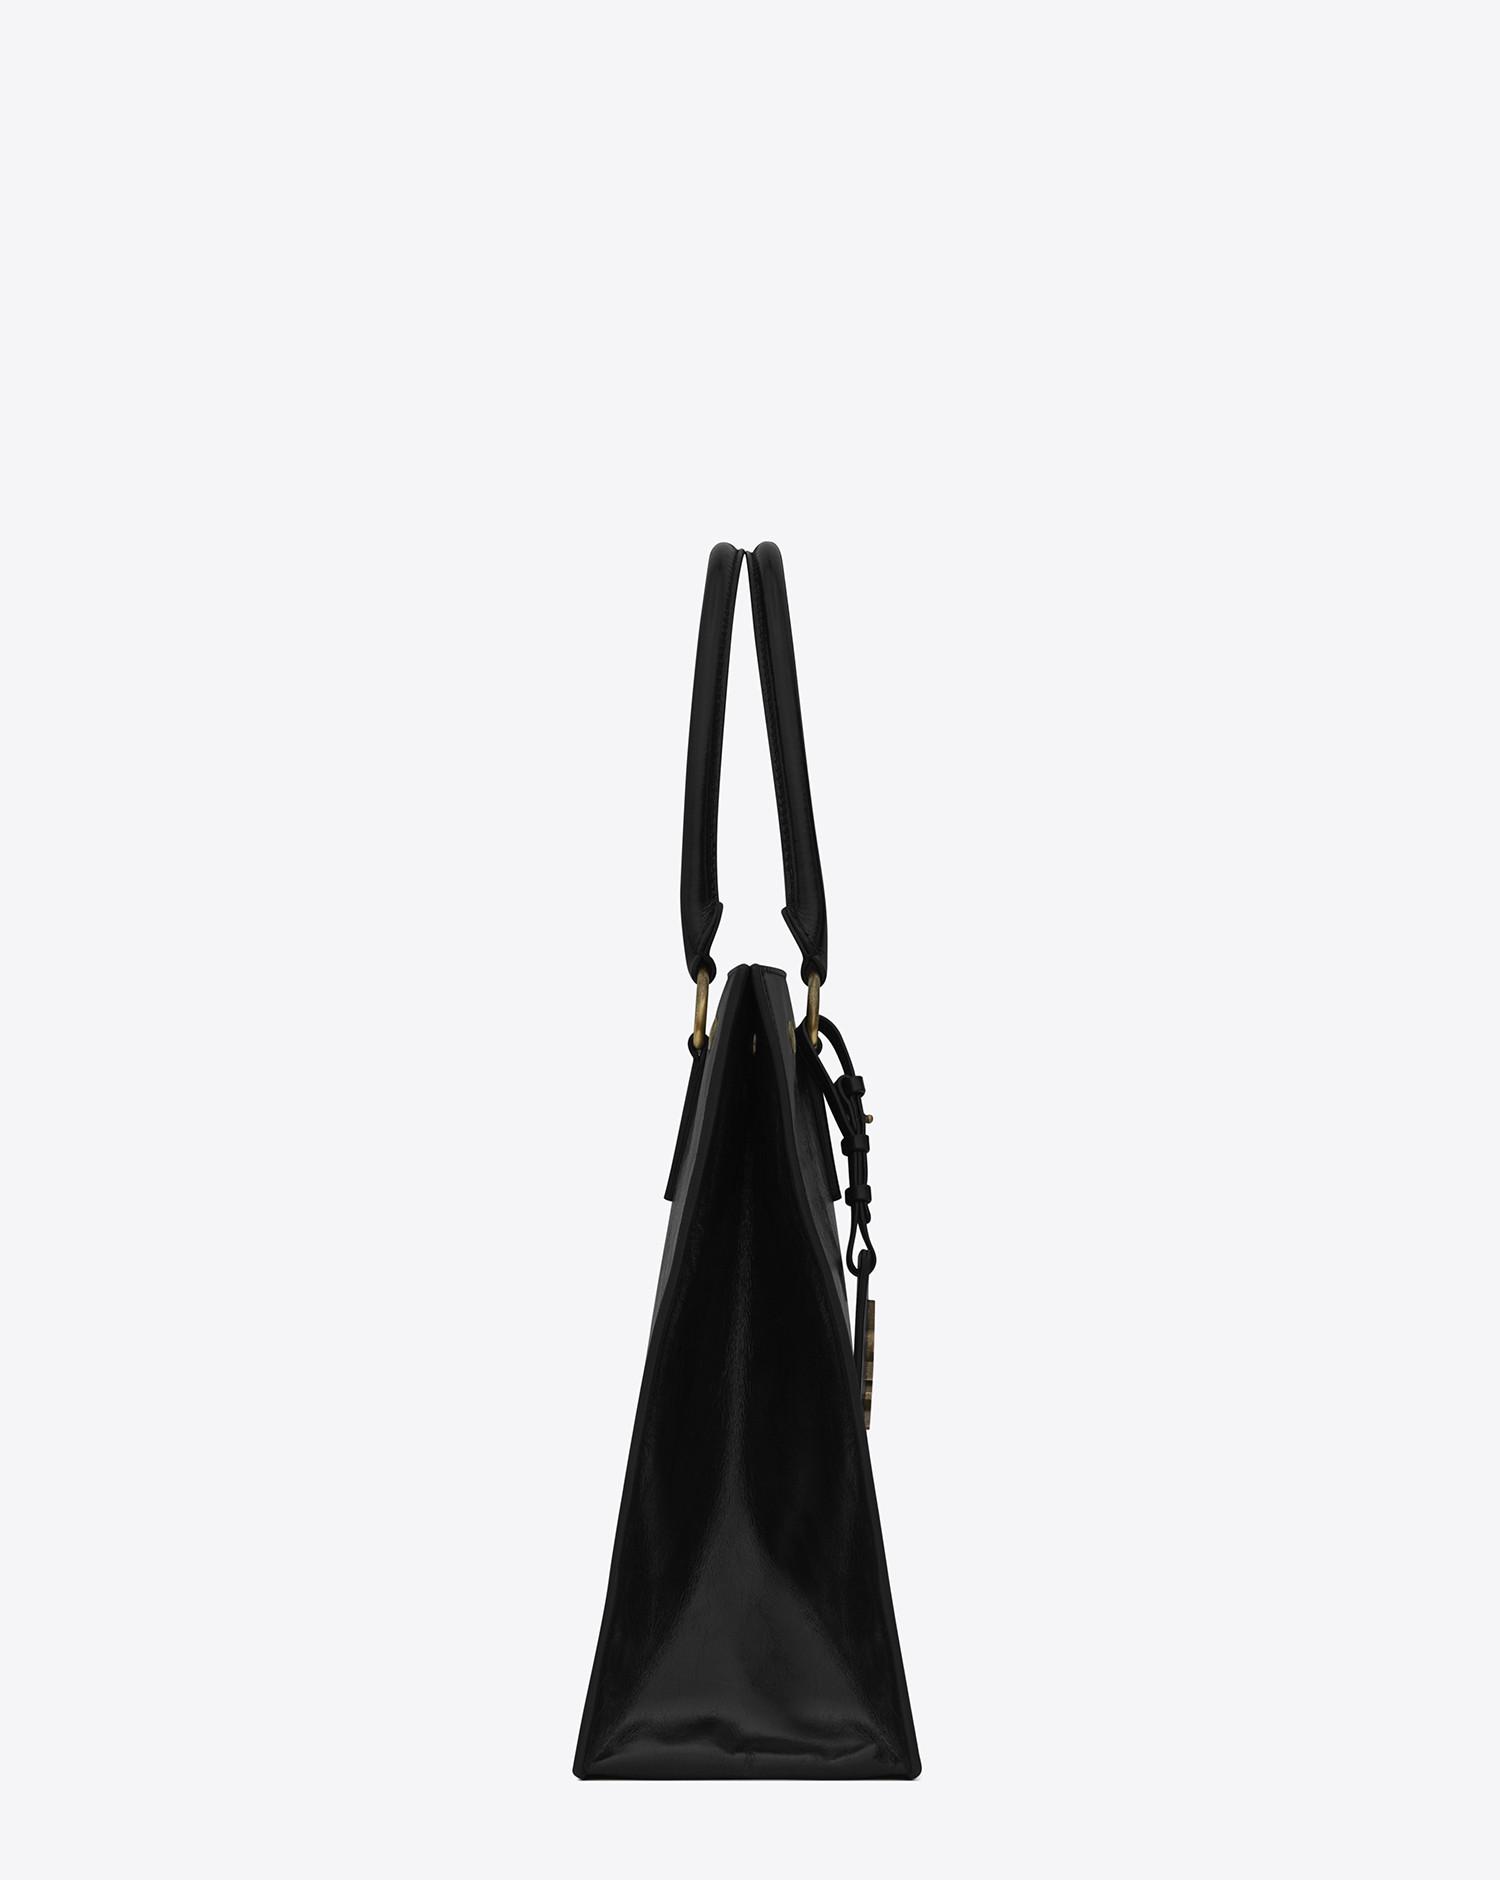 Saint Laurent Noe Cabas Bag In Black Moroder Leather - Lyst